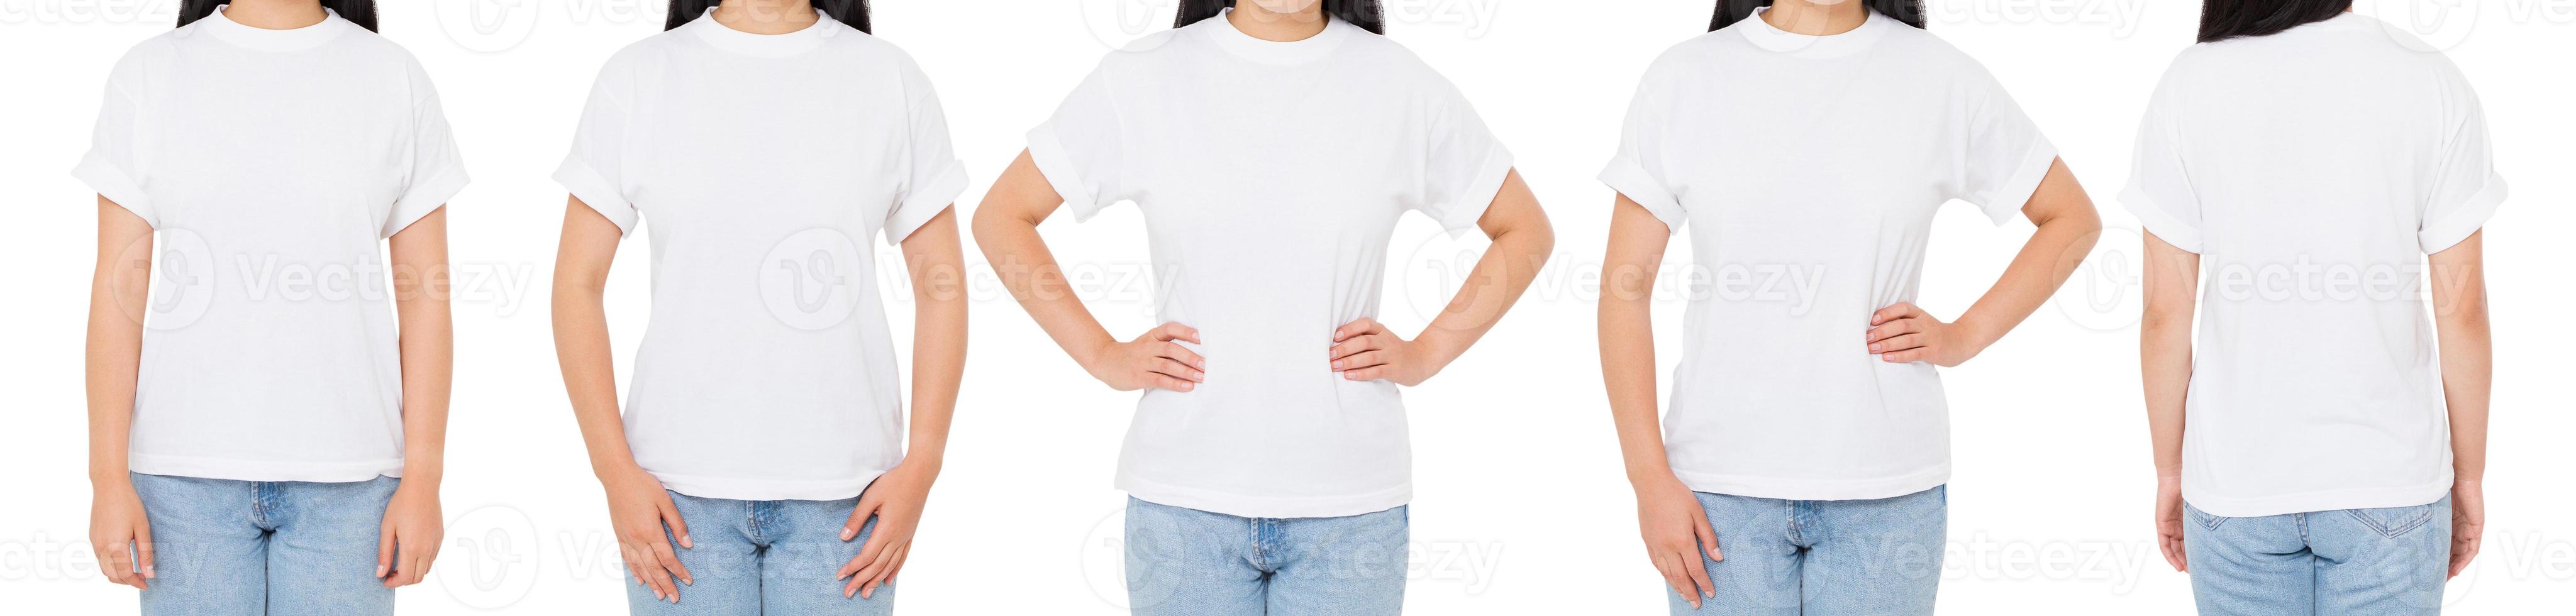 T-Shirt-Set, Frauen-T-Shirt isoliert, viele Vorderansicht-T-Shirts, Mädchen in weißer Hemdcollage foto